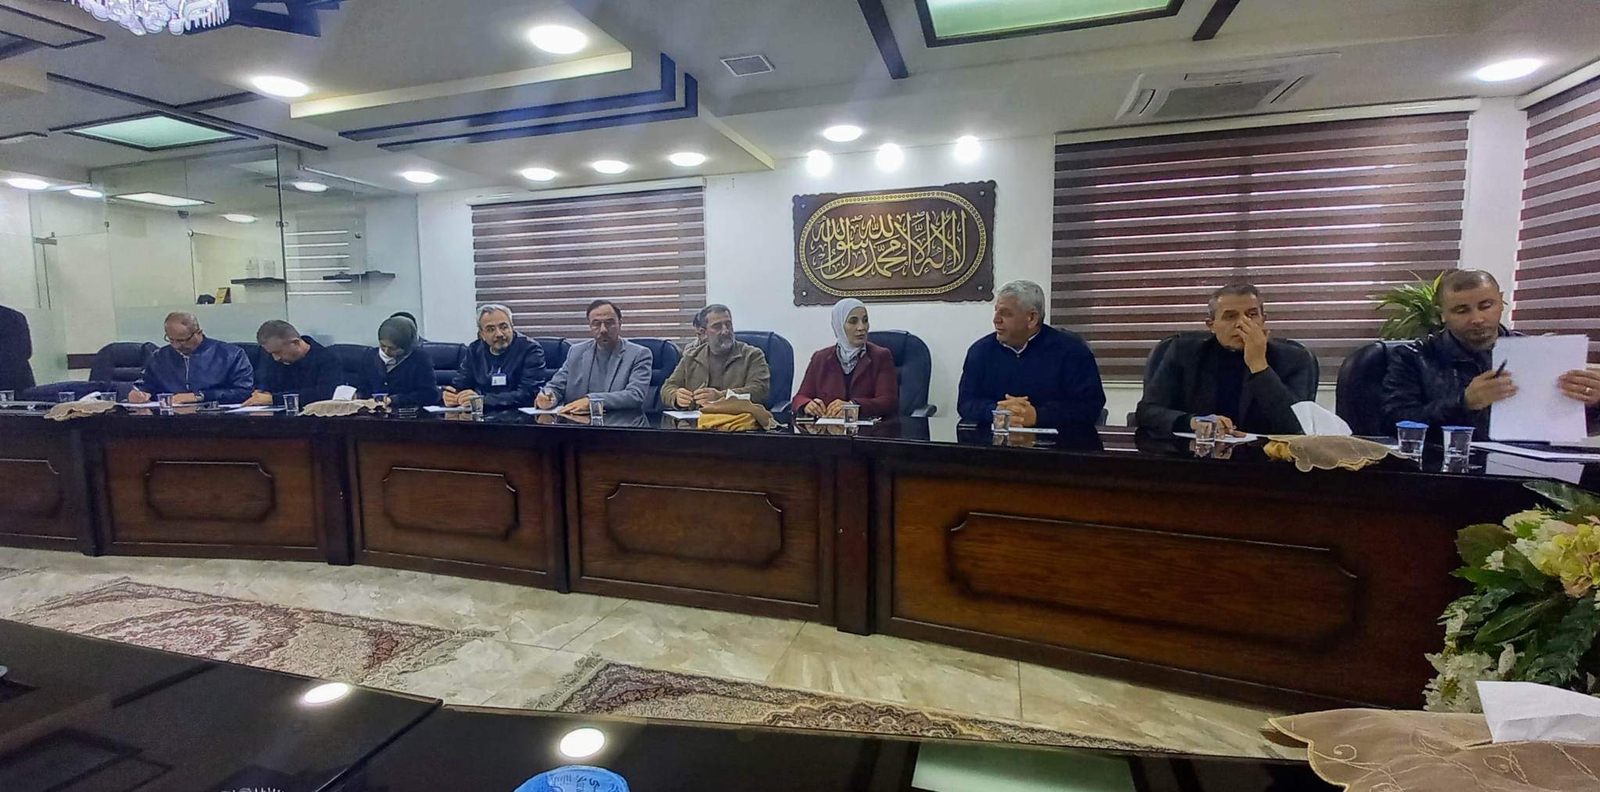 الكوفحي يعقد مؤتمراً صحفياً عن التحديات والمنجزات لبلدية إربد 